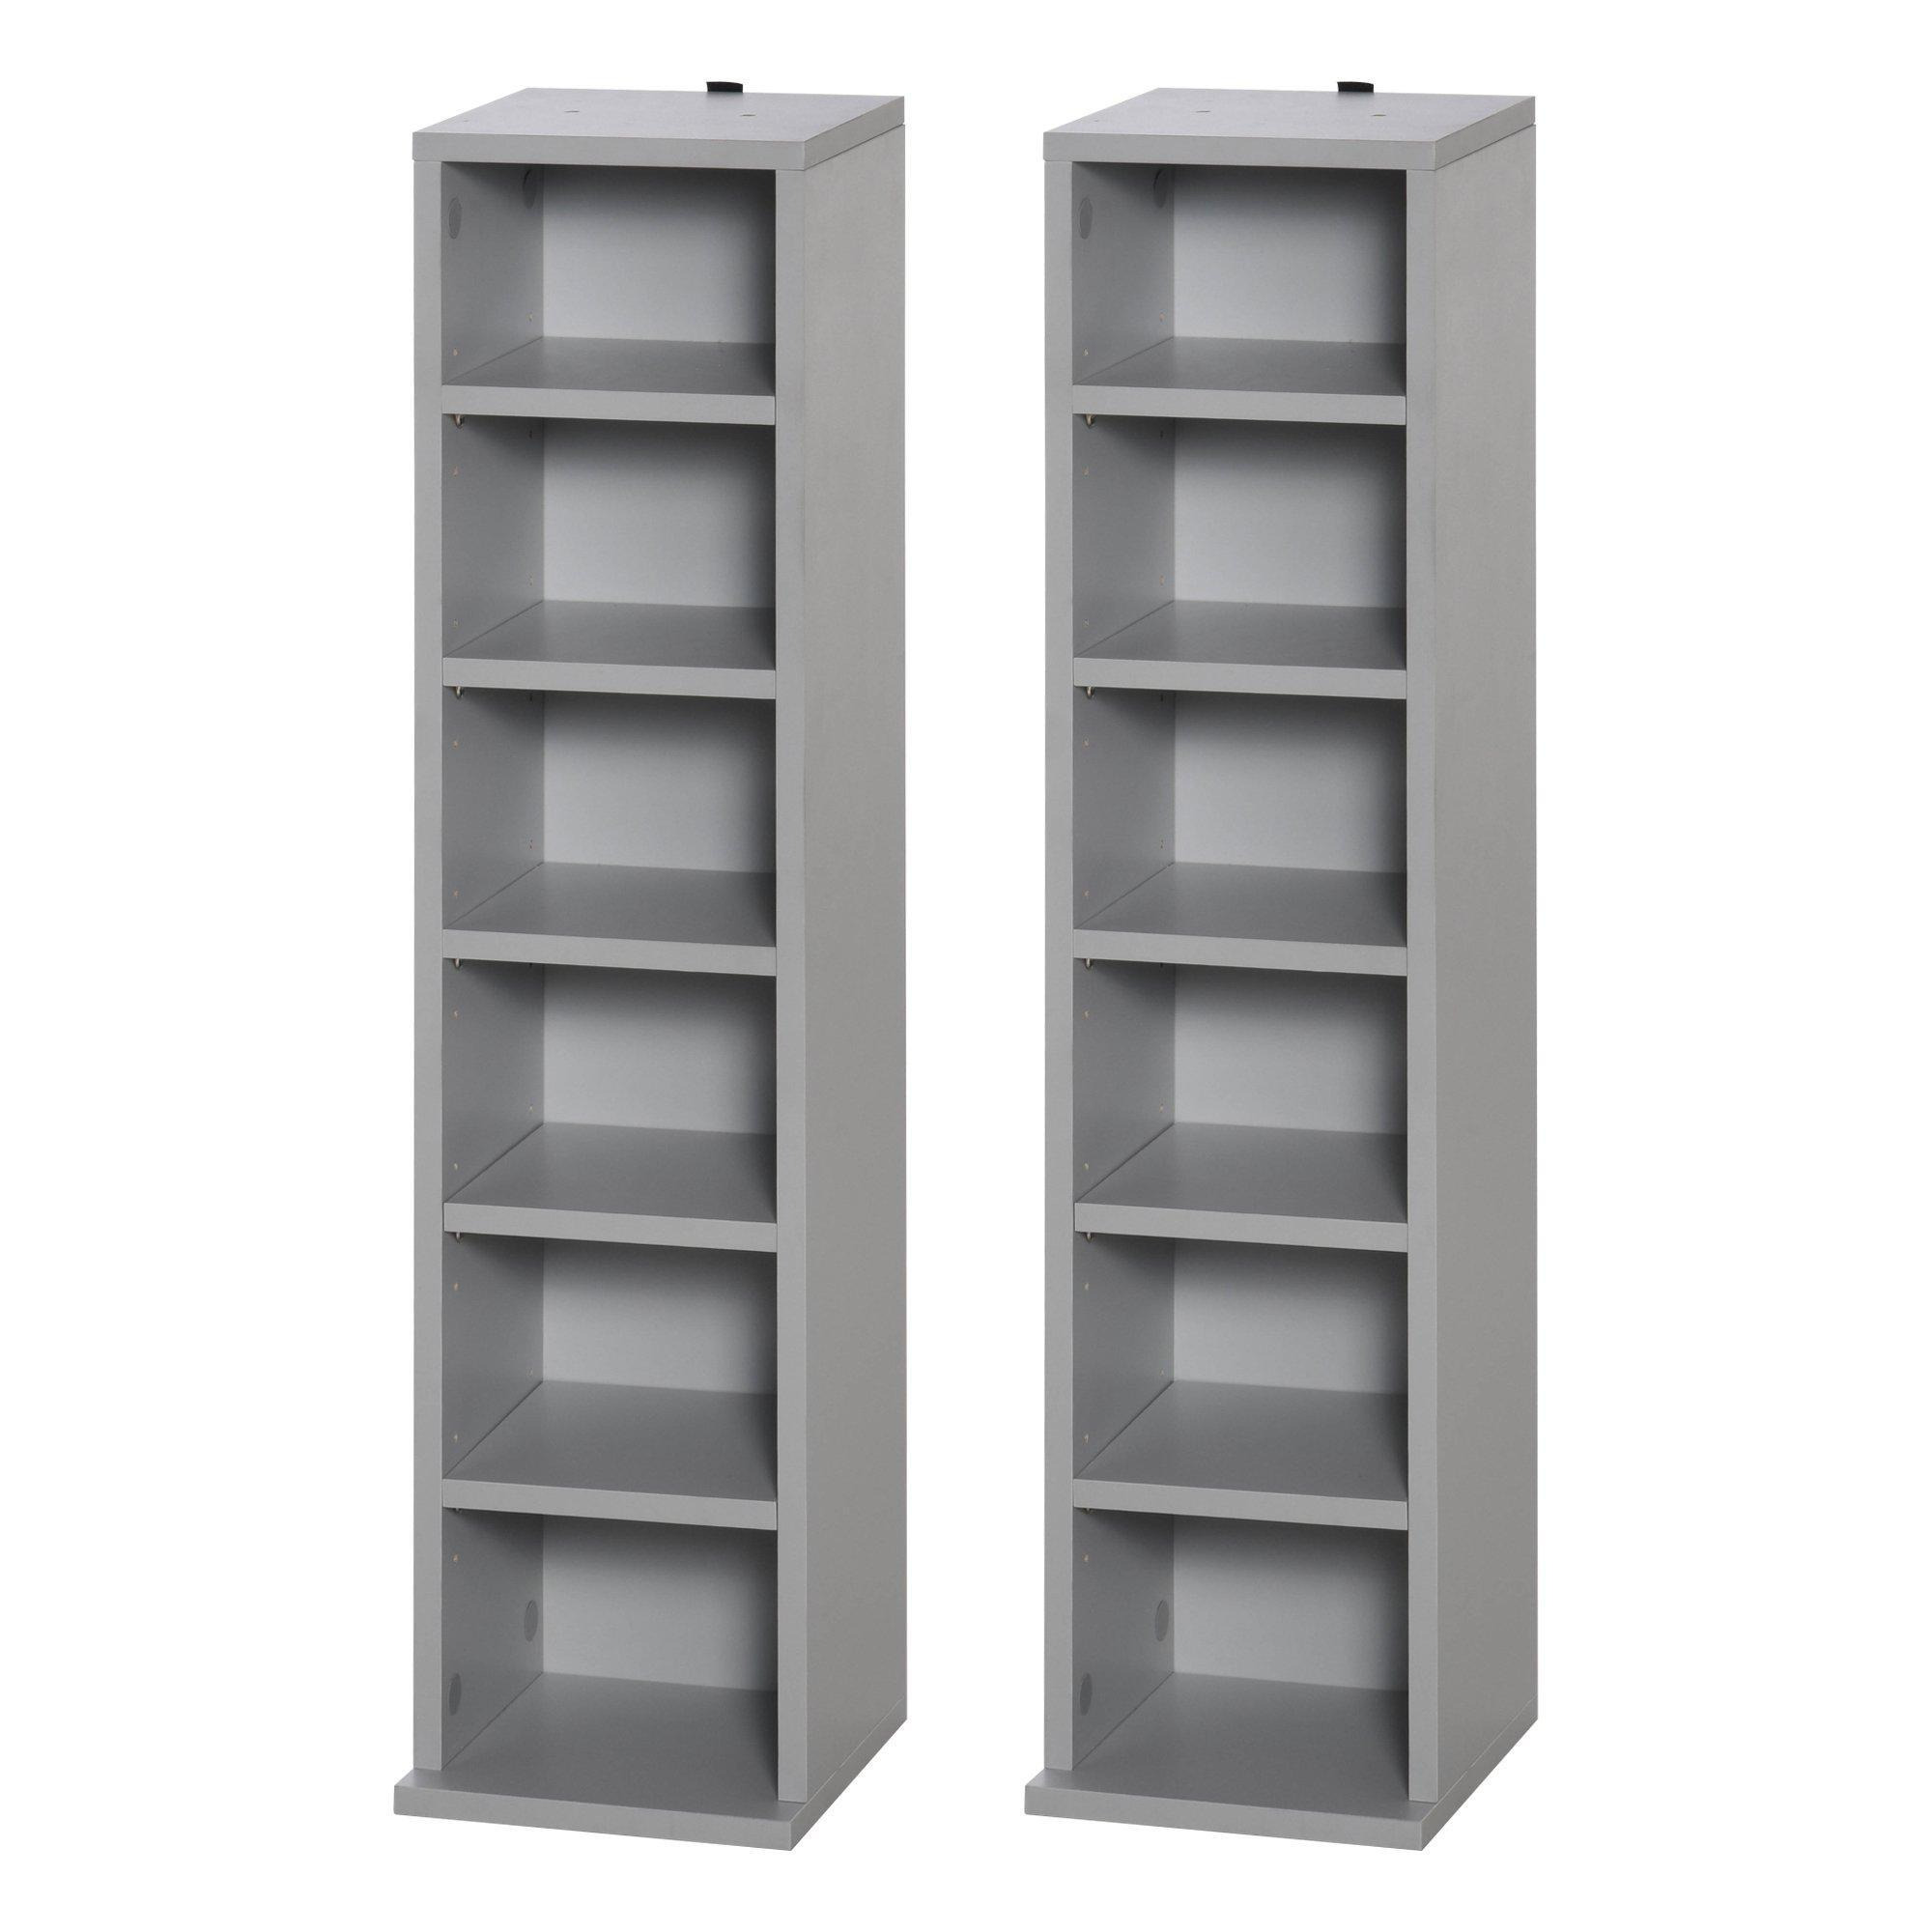 Set of 2 CD Media Display Shelf Unit Tower Rack Adjustable Shelves - image 1